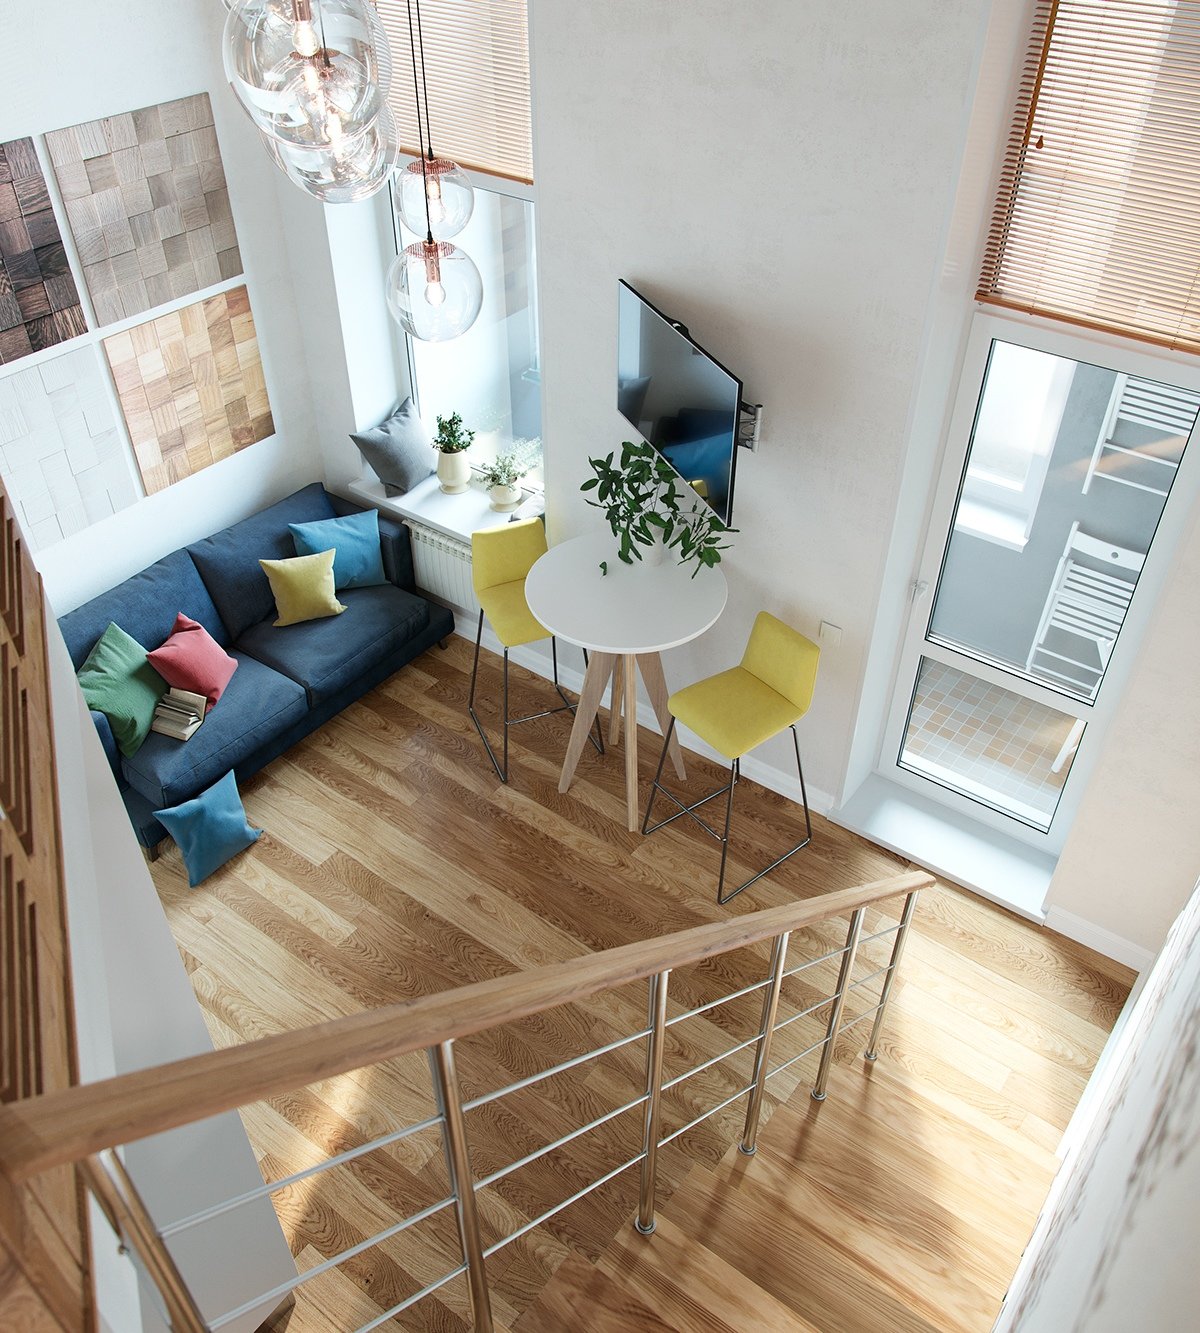 creative home loft inspiration Thiết kế nhân đôi không gian cho những căn nhà nhỏ nhờ gác xép